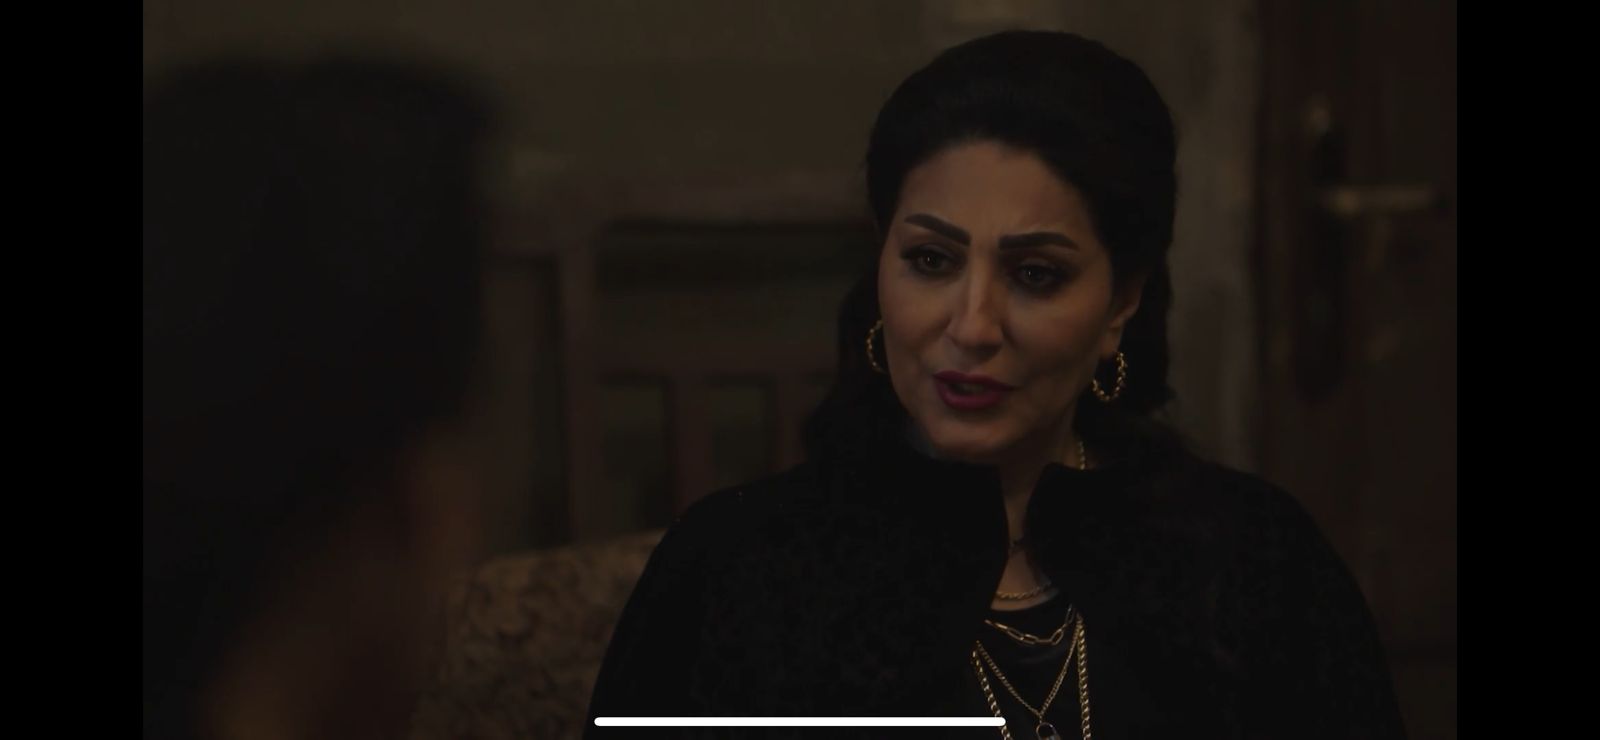 مسلسل حق عرب الحلقة 4 وفاء عامر تفكر في الإعتراف بقتلها عايدة فهمي لتنقذ ابنها (1)